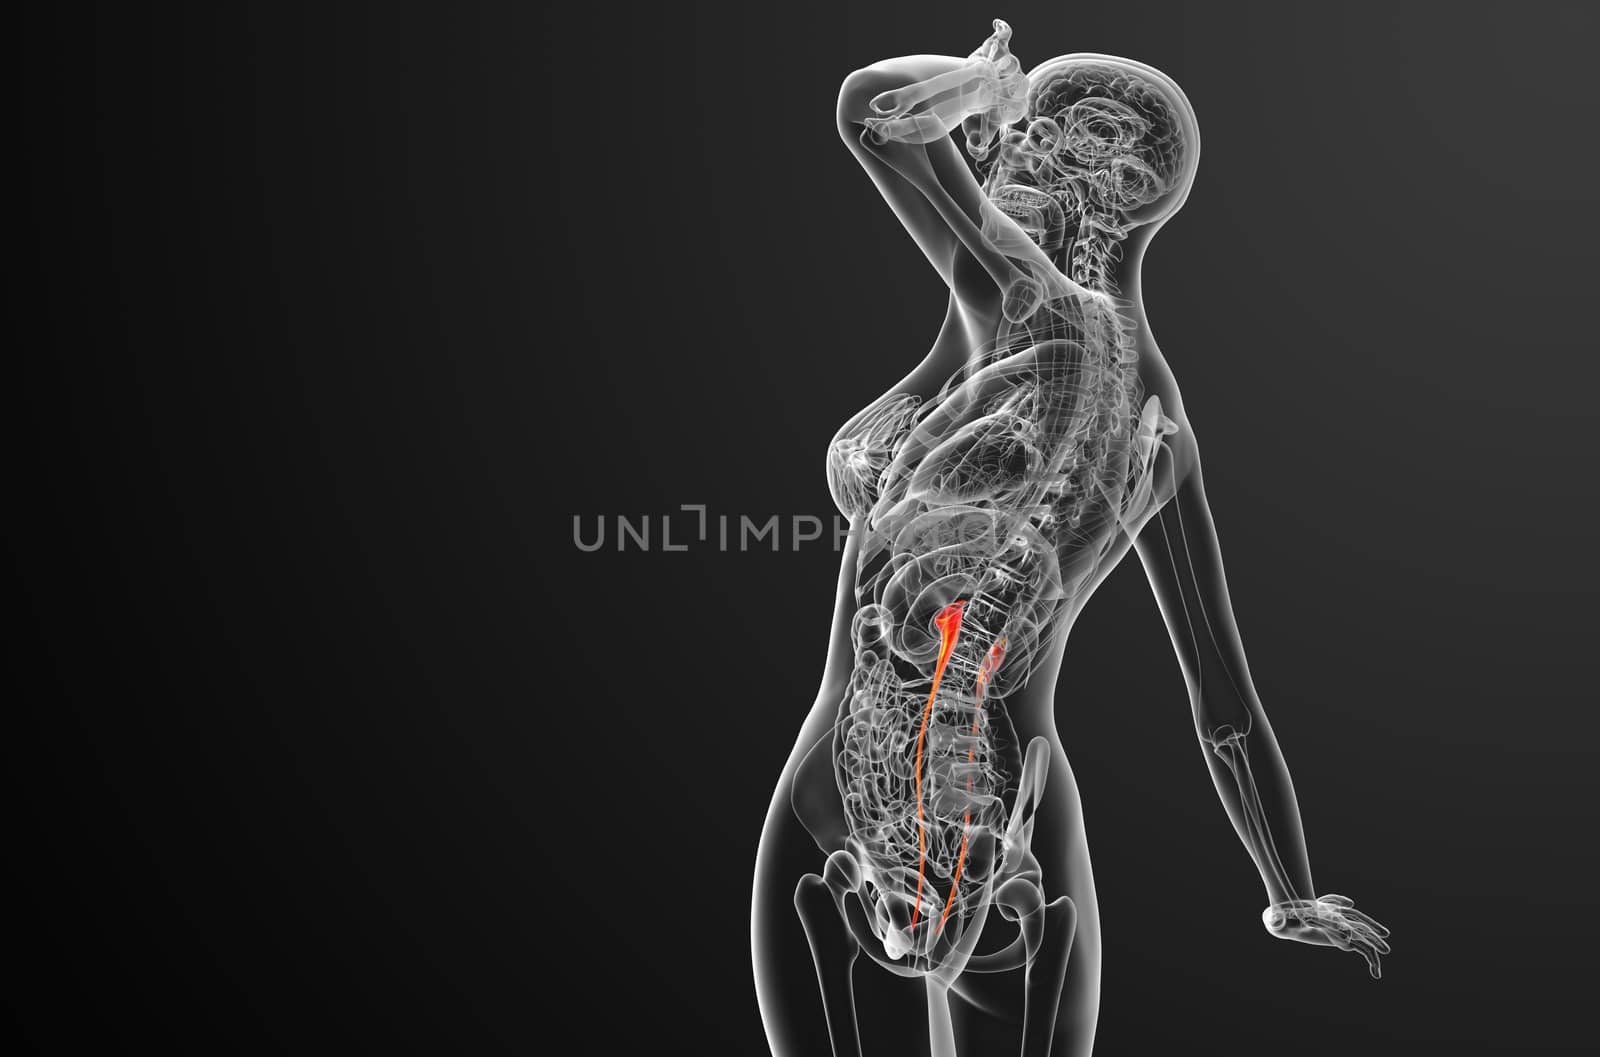 3d render medical illustration of the ureter - side view